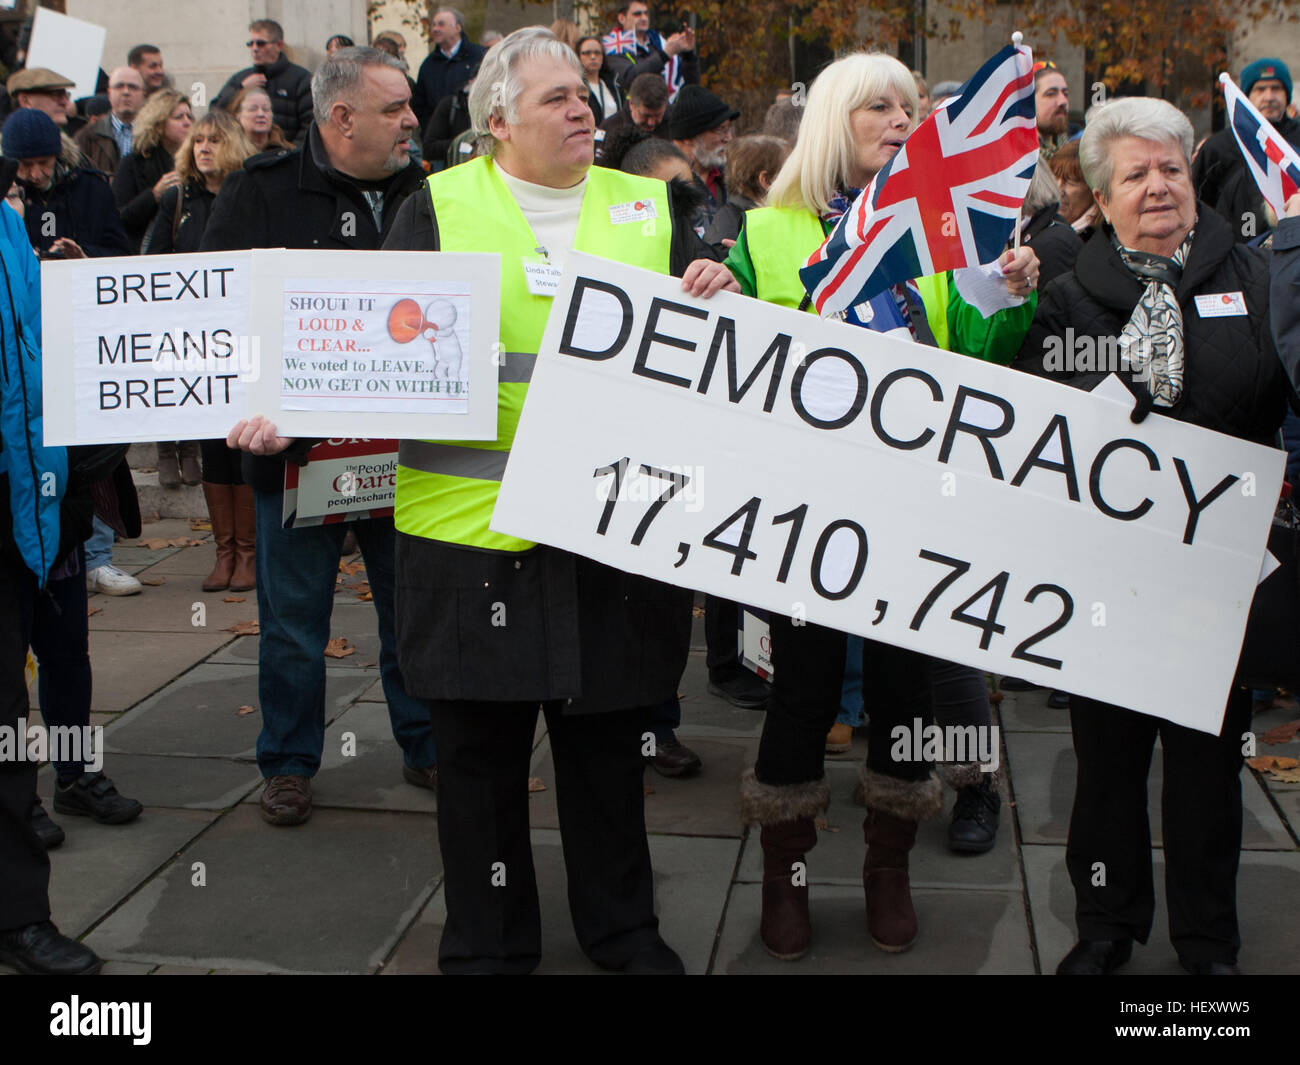 Brexit Pro pieds à Londres protestation, Parliament Square, Westminster, London, UK : l'atmosphère, d'où la vue : London, Royaume-Uni Quand : 23 Nov 2016 Banque D'Images